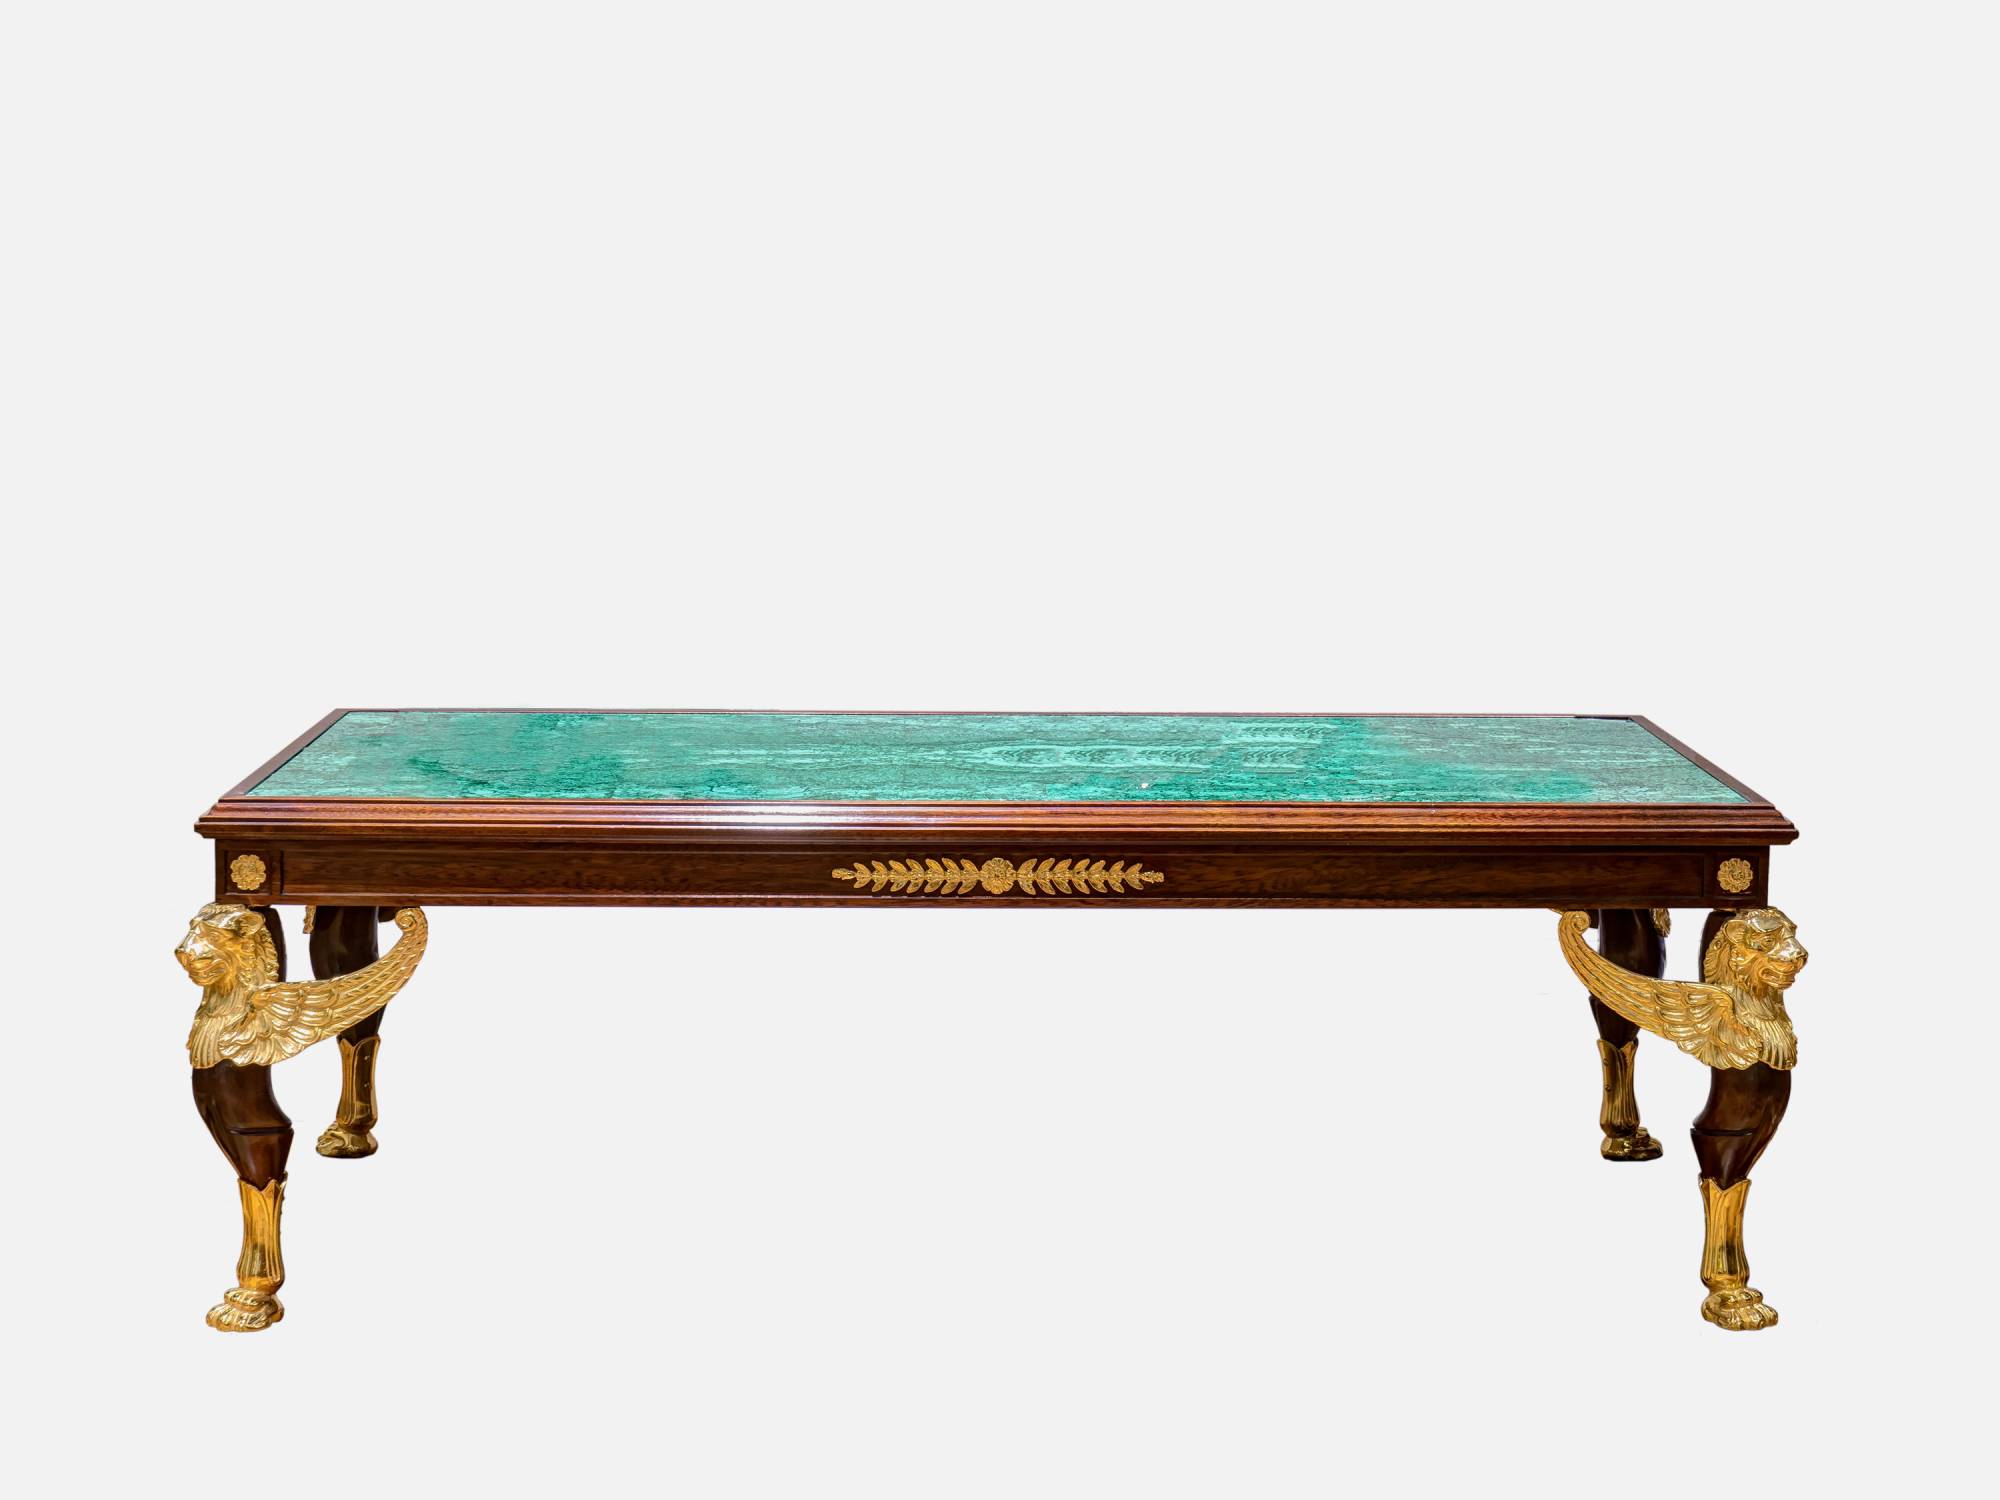 ART. 780-4 – C.G. Capelletti Italian Luxury Classic Small tables. Made in Italy classic interior design